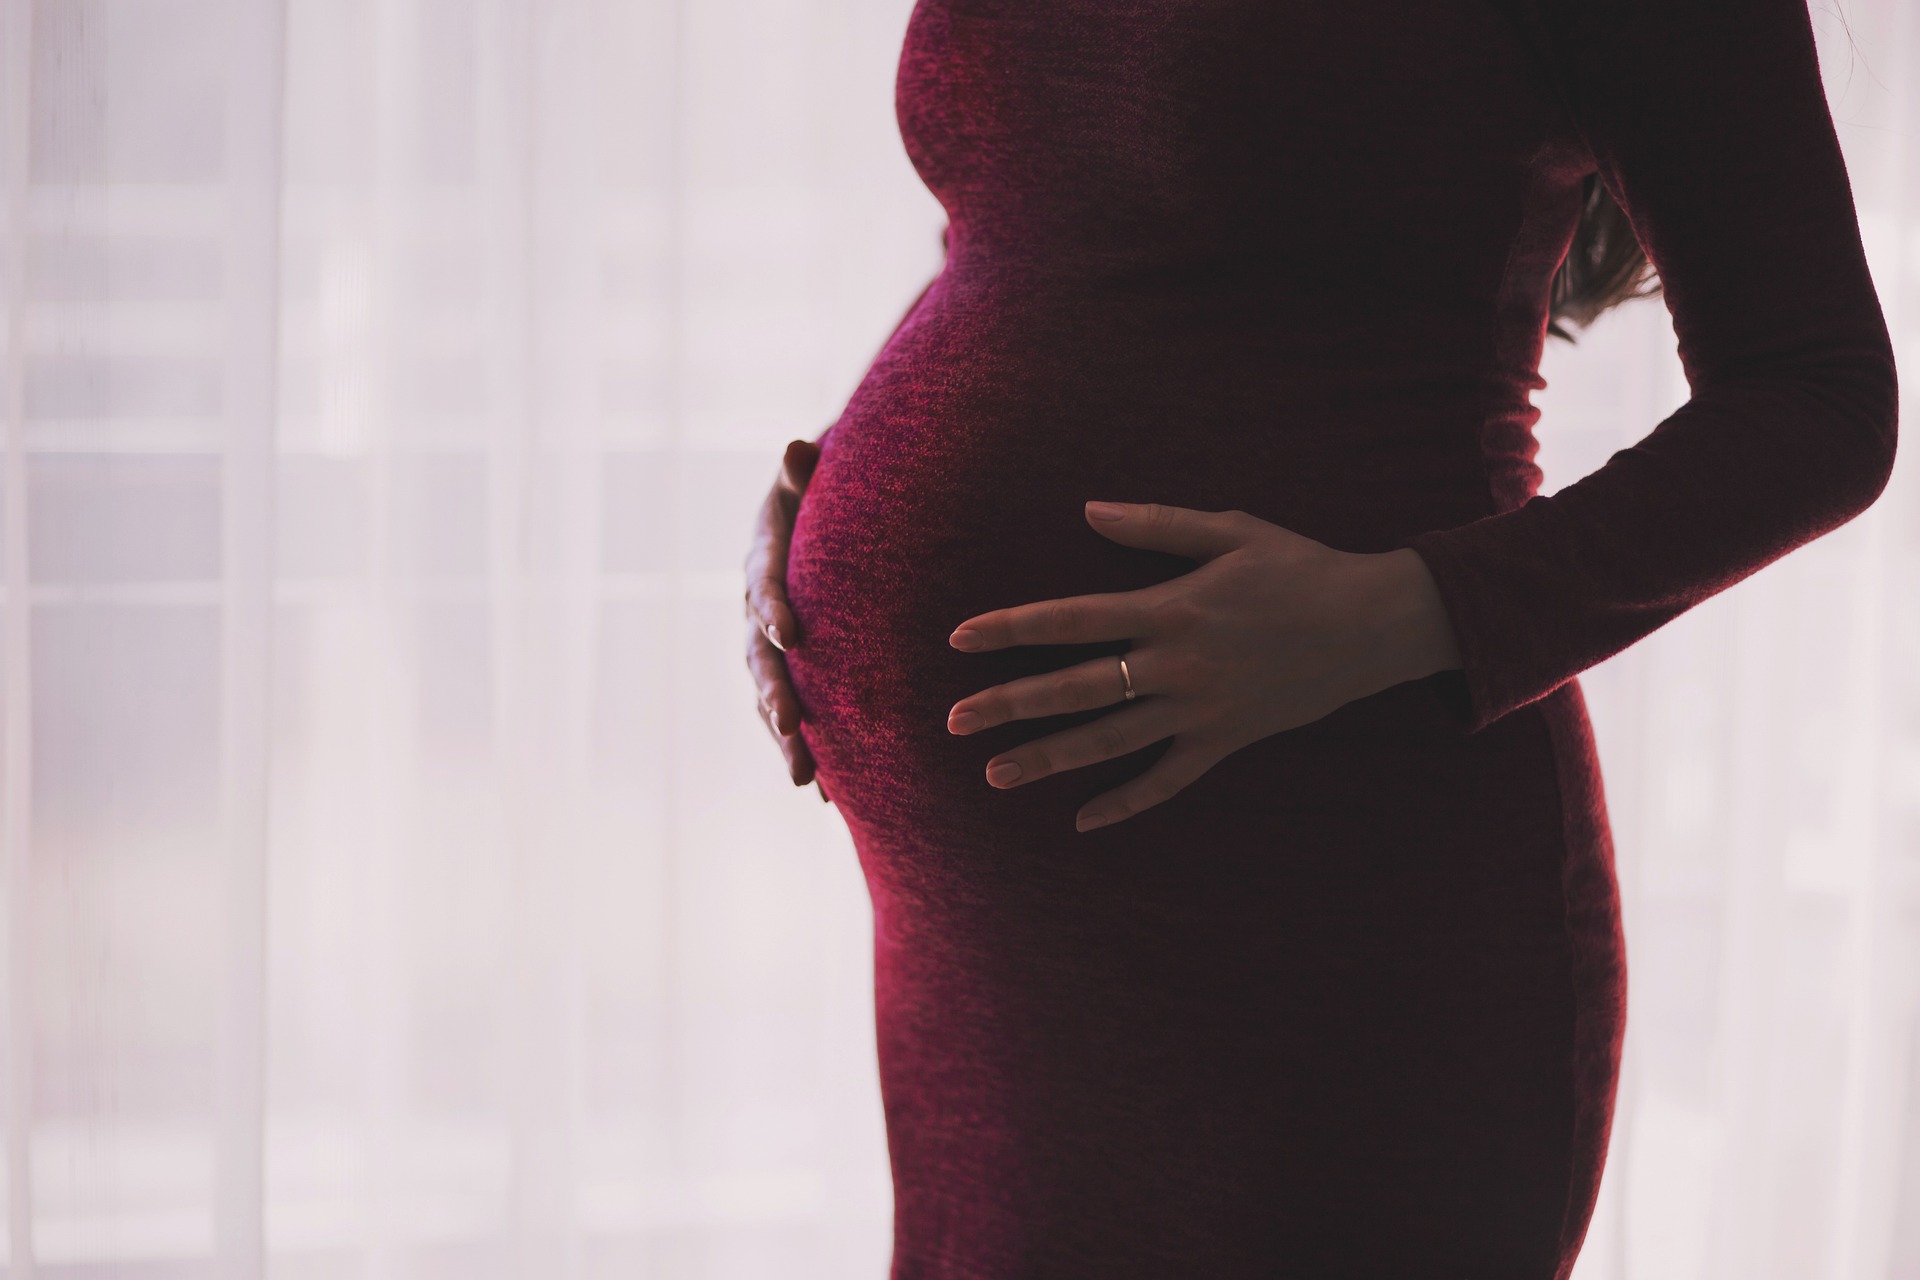 Immagine in evidenza del post: Si può partecipare ai concorsi pubblici in maternità?